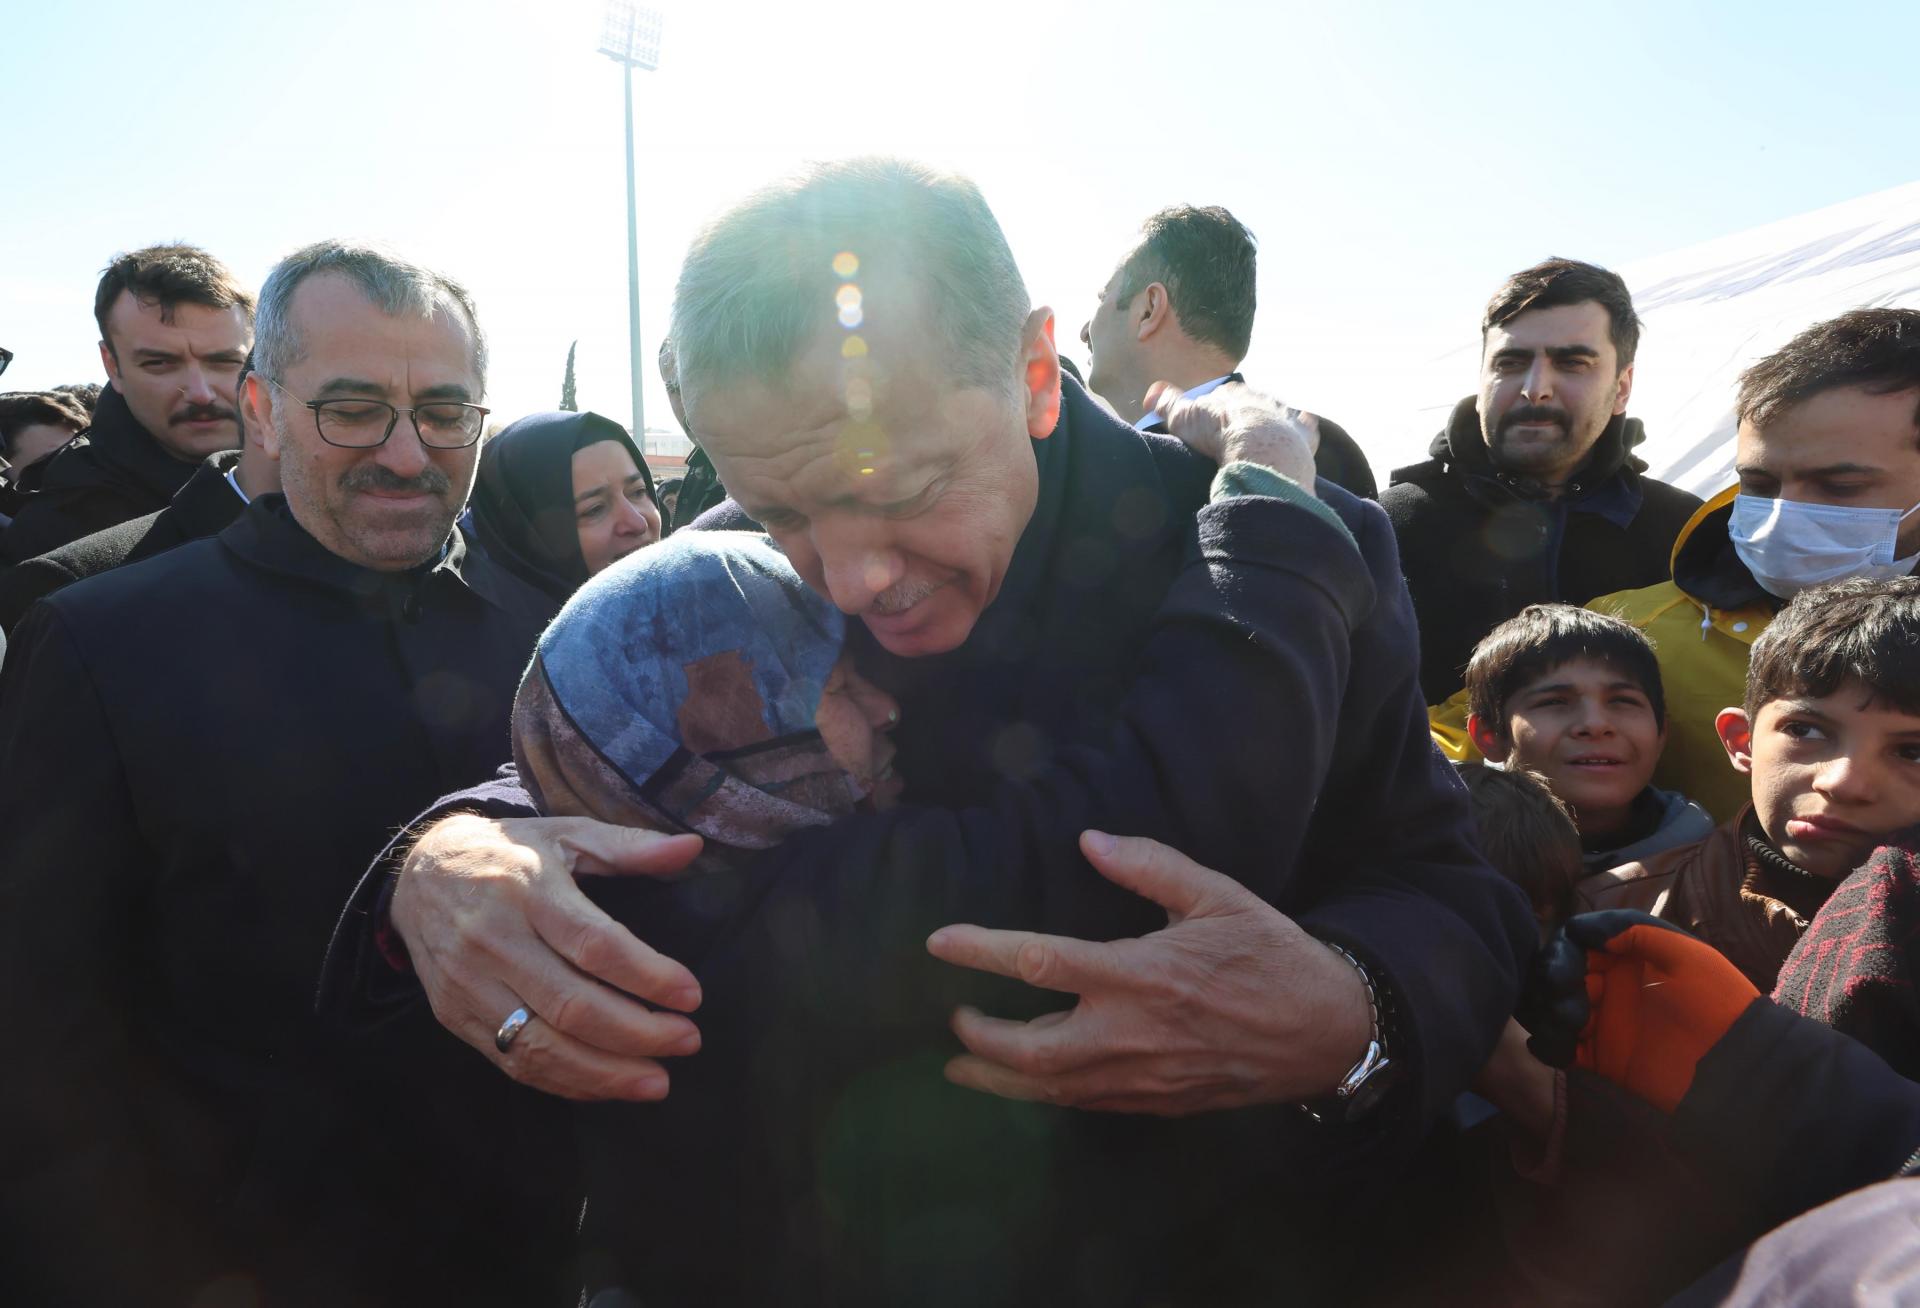 اردوغان: اکنون زمان وحدت، همبستگی و هماهنگی است